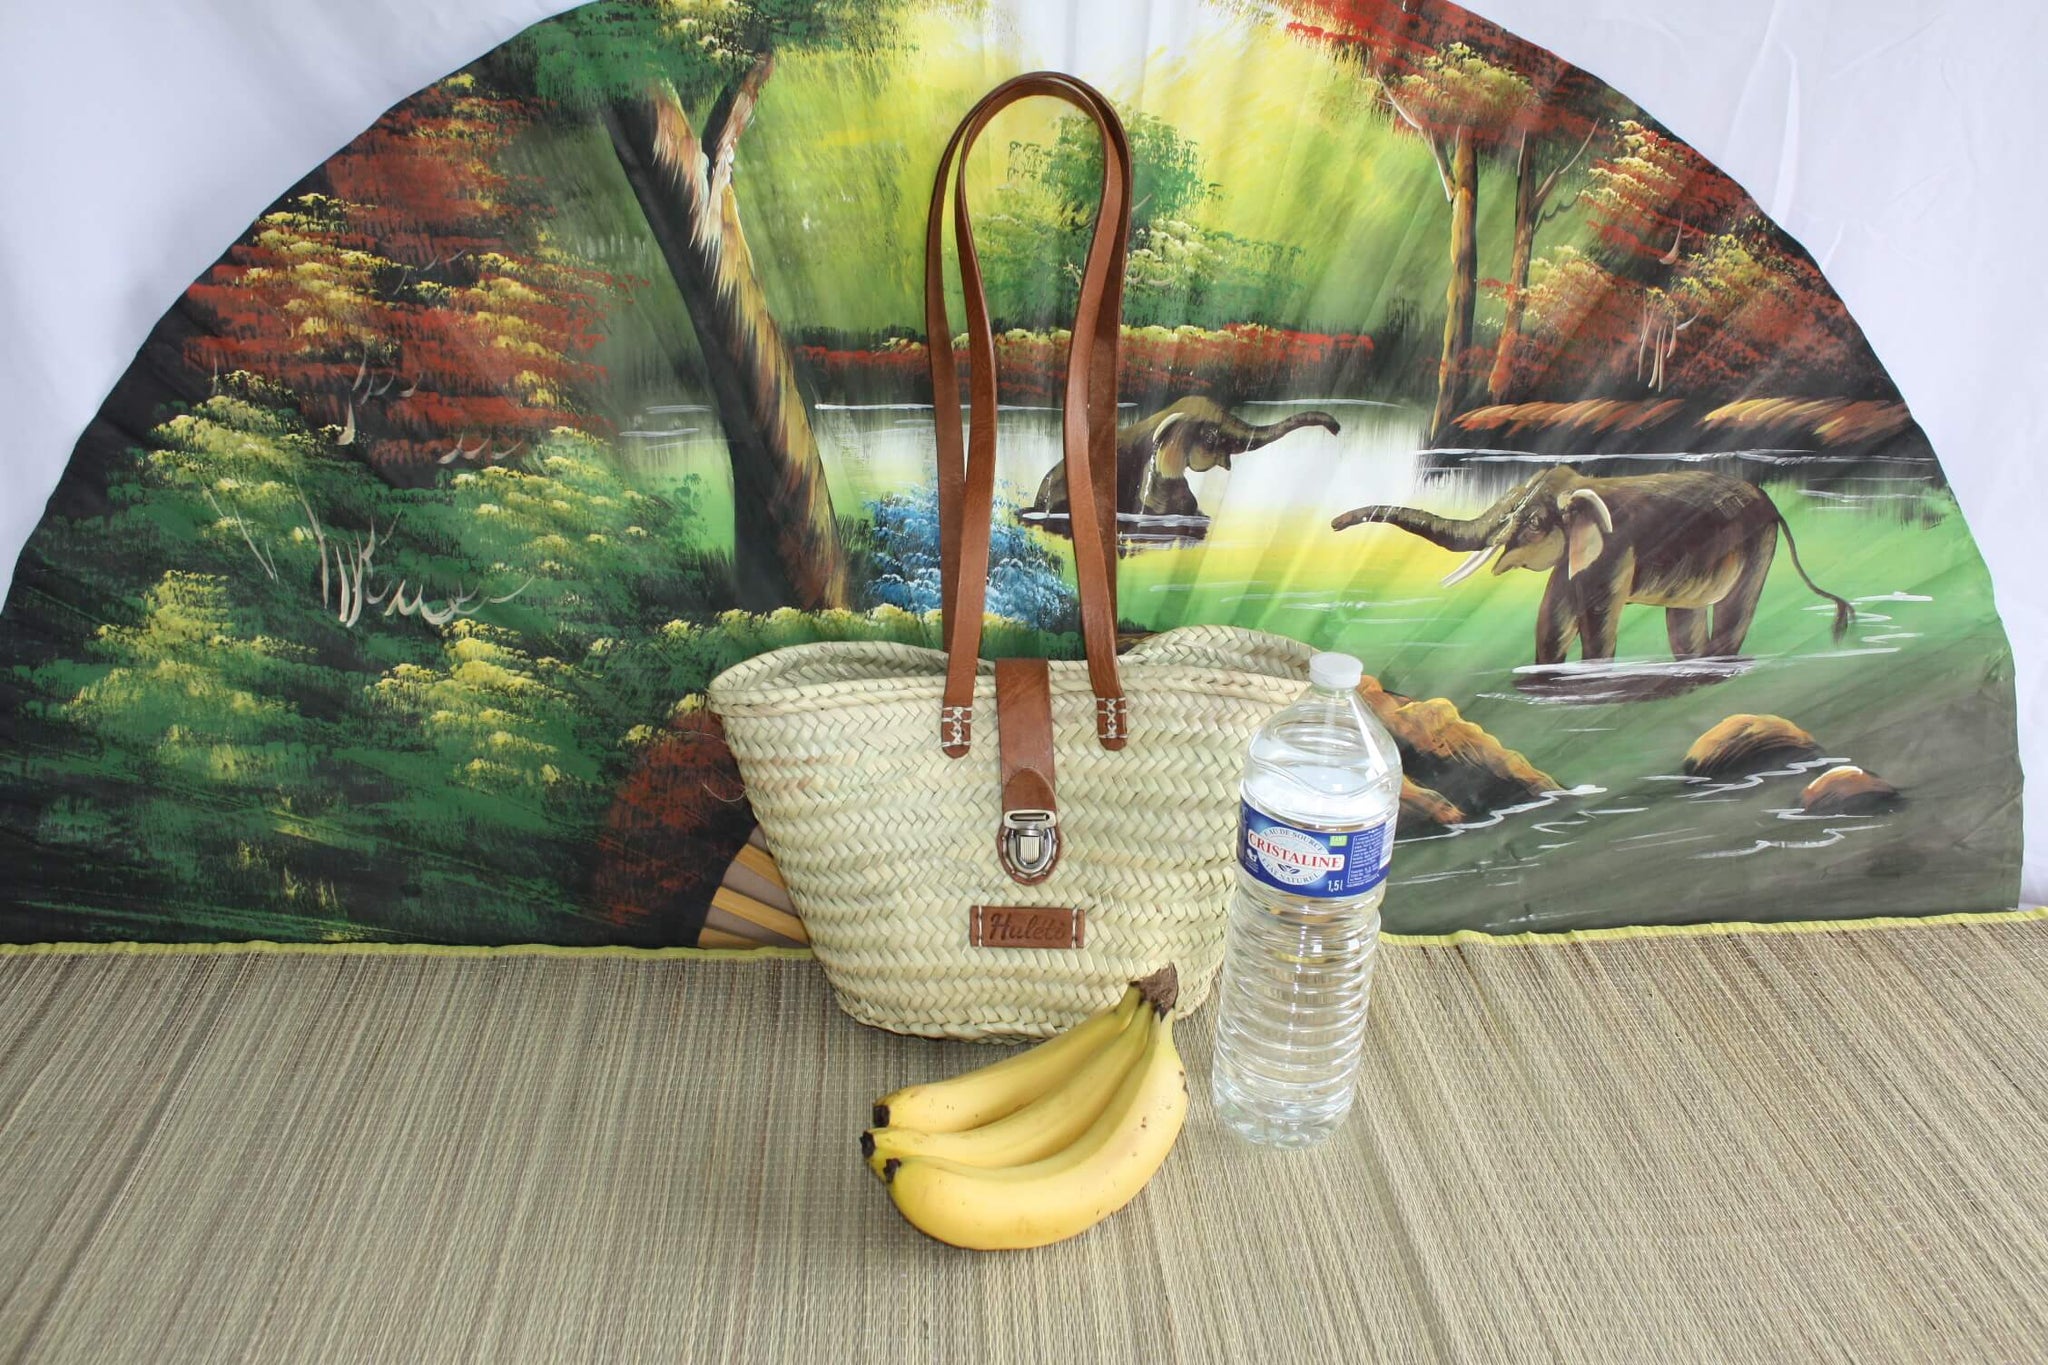 Hervorragende Tasche mit langen Ledergriffen, Kofferverschluss – Tote Market Shopping Beach Natural Basket